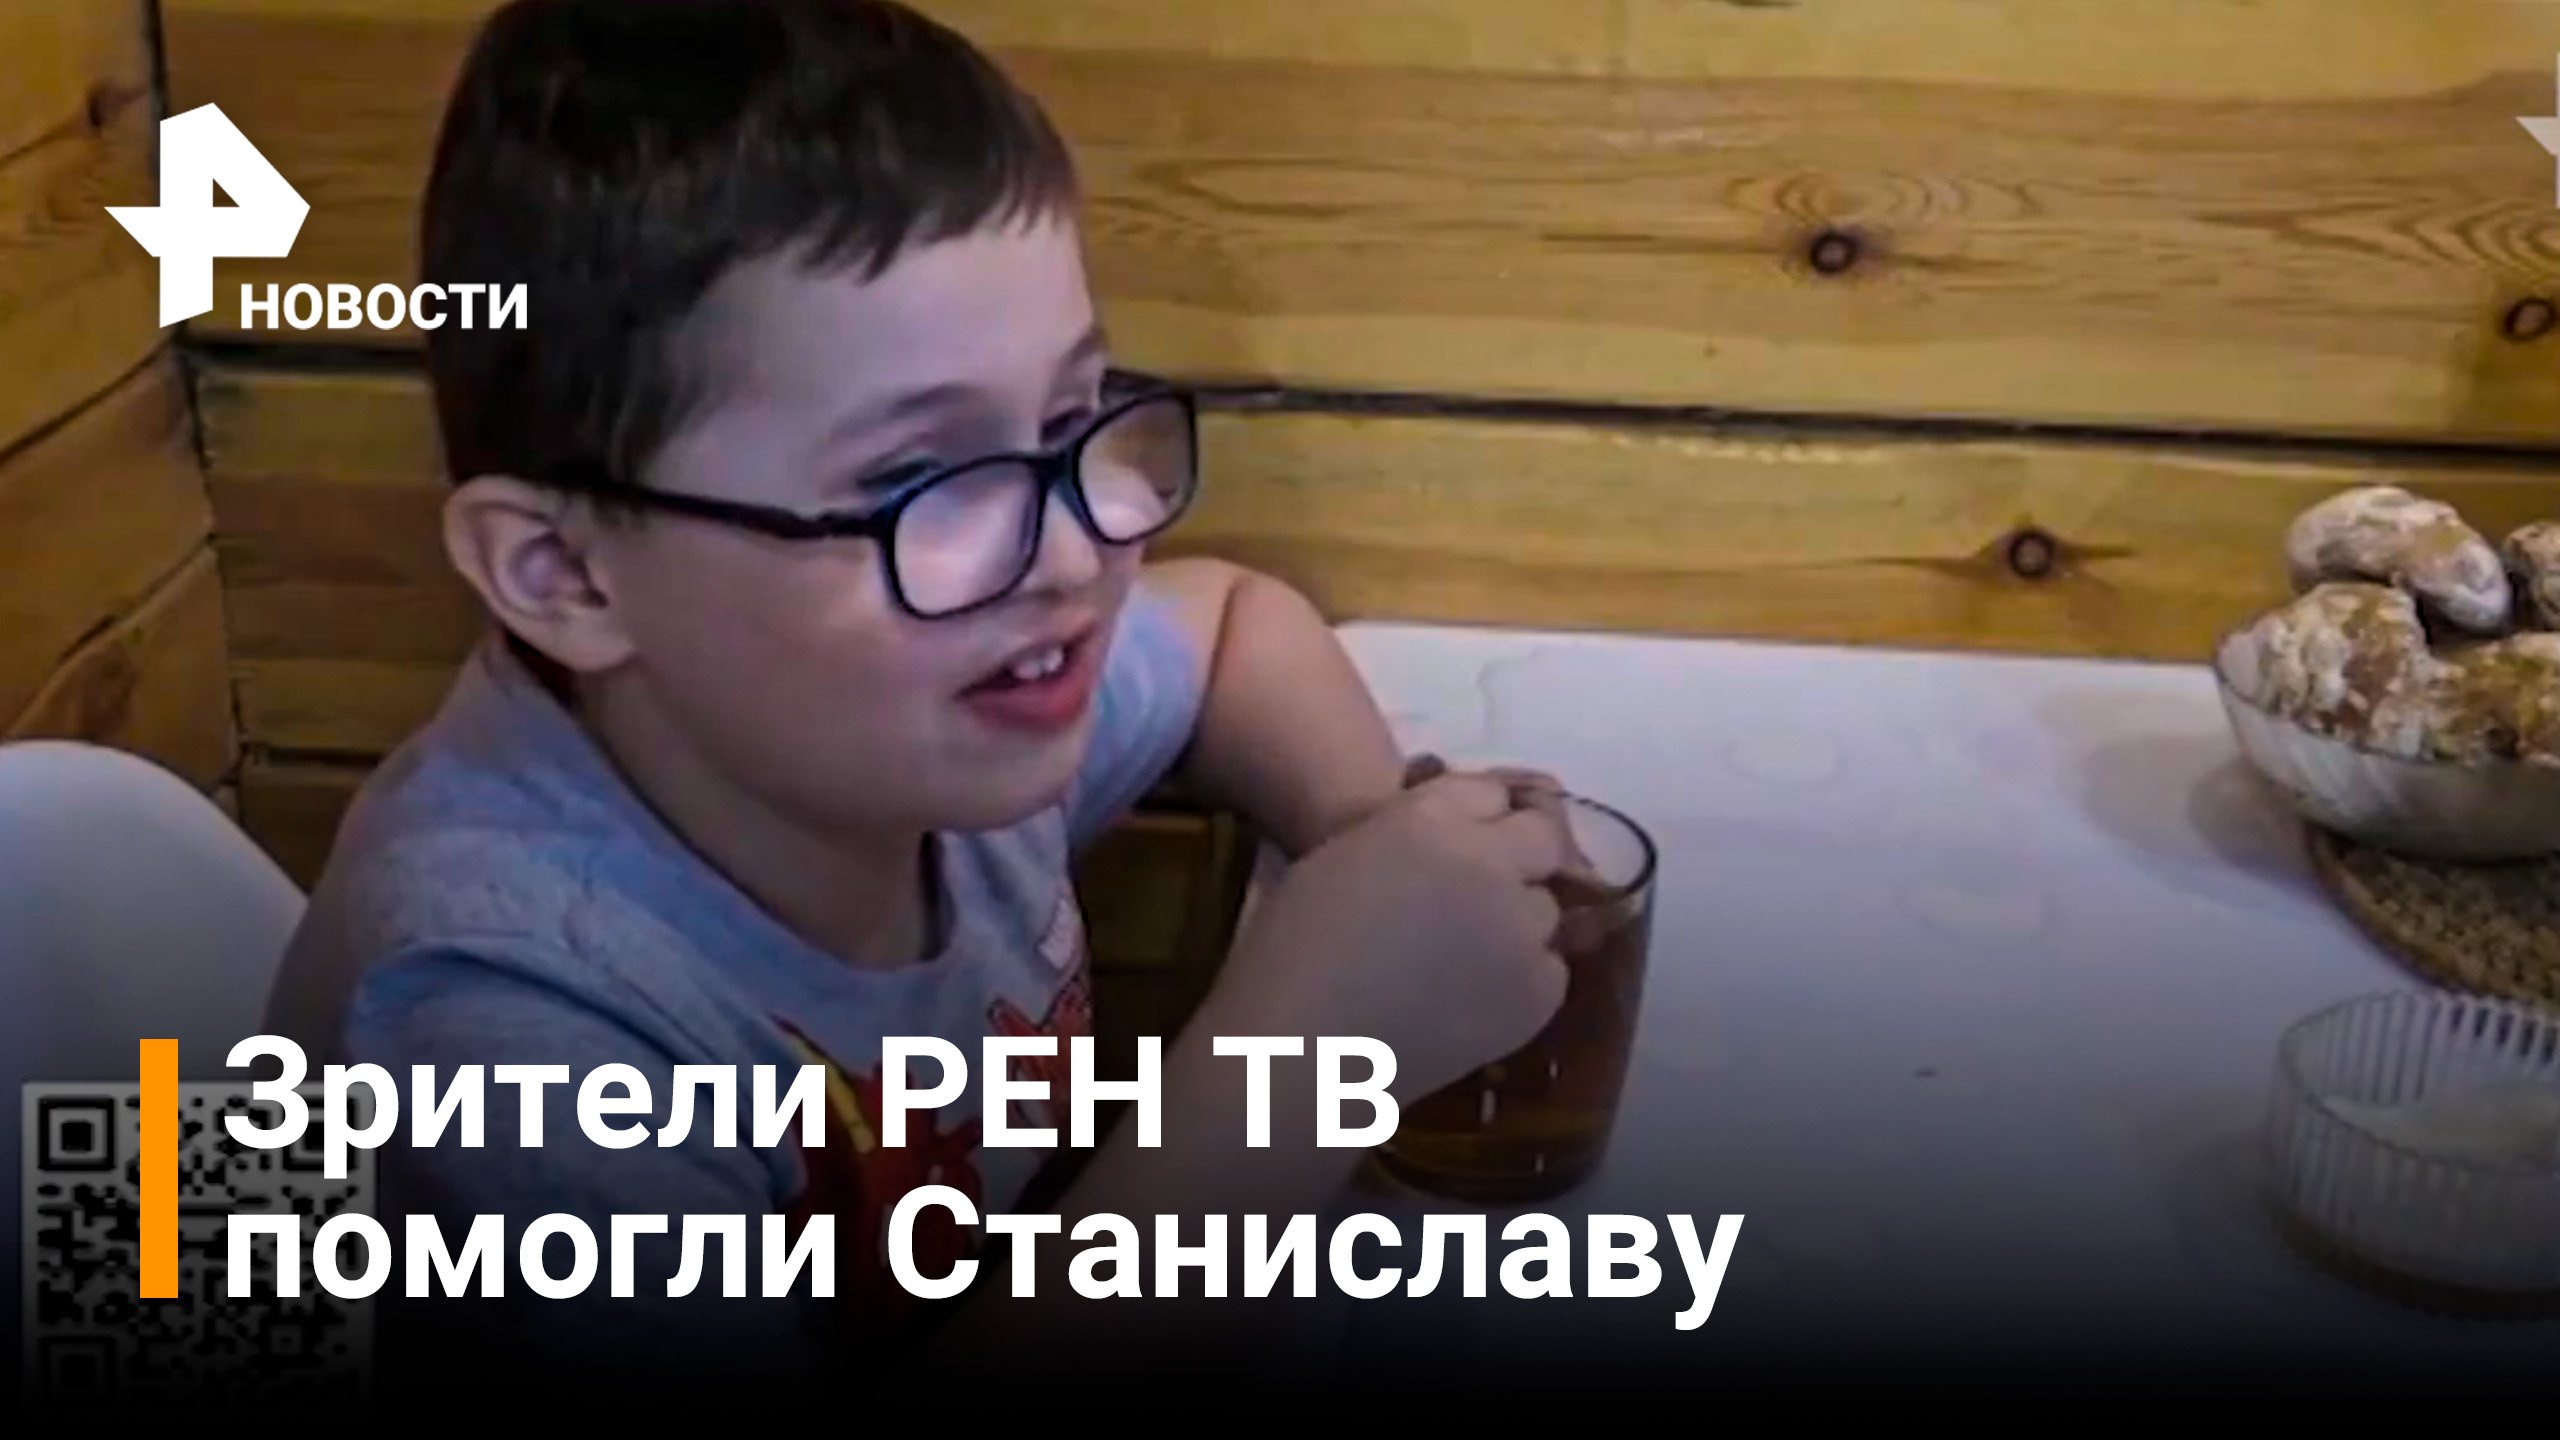 Зрители РЕН ТВ смогли помочь маленькому Станиславу / Новости РЕН